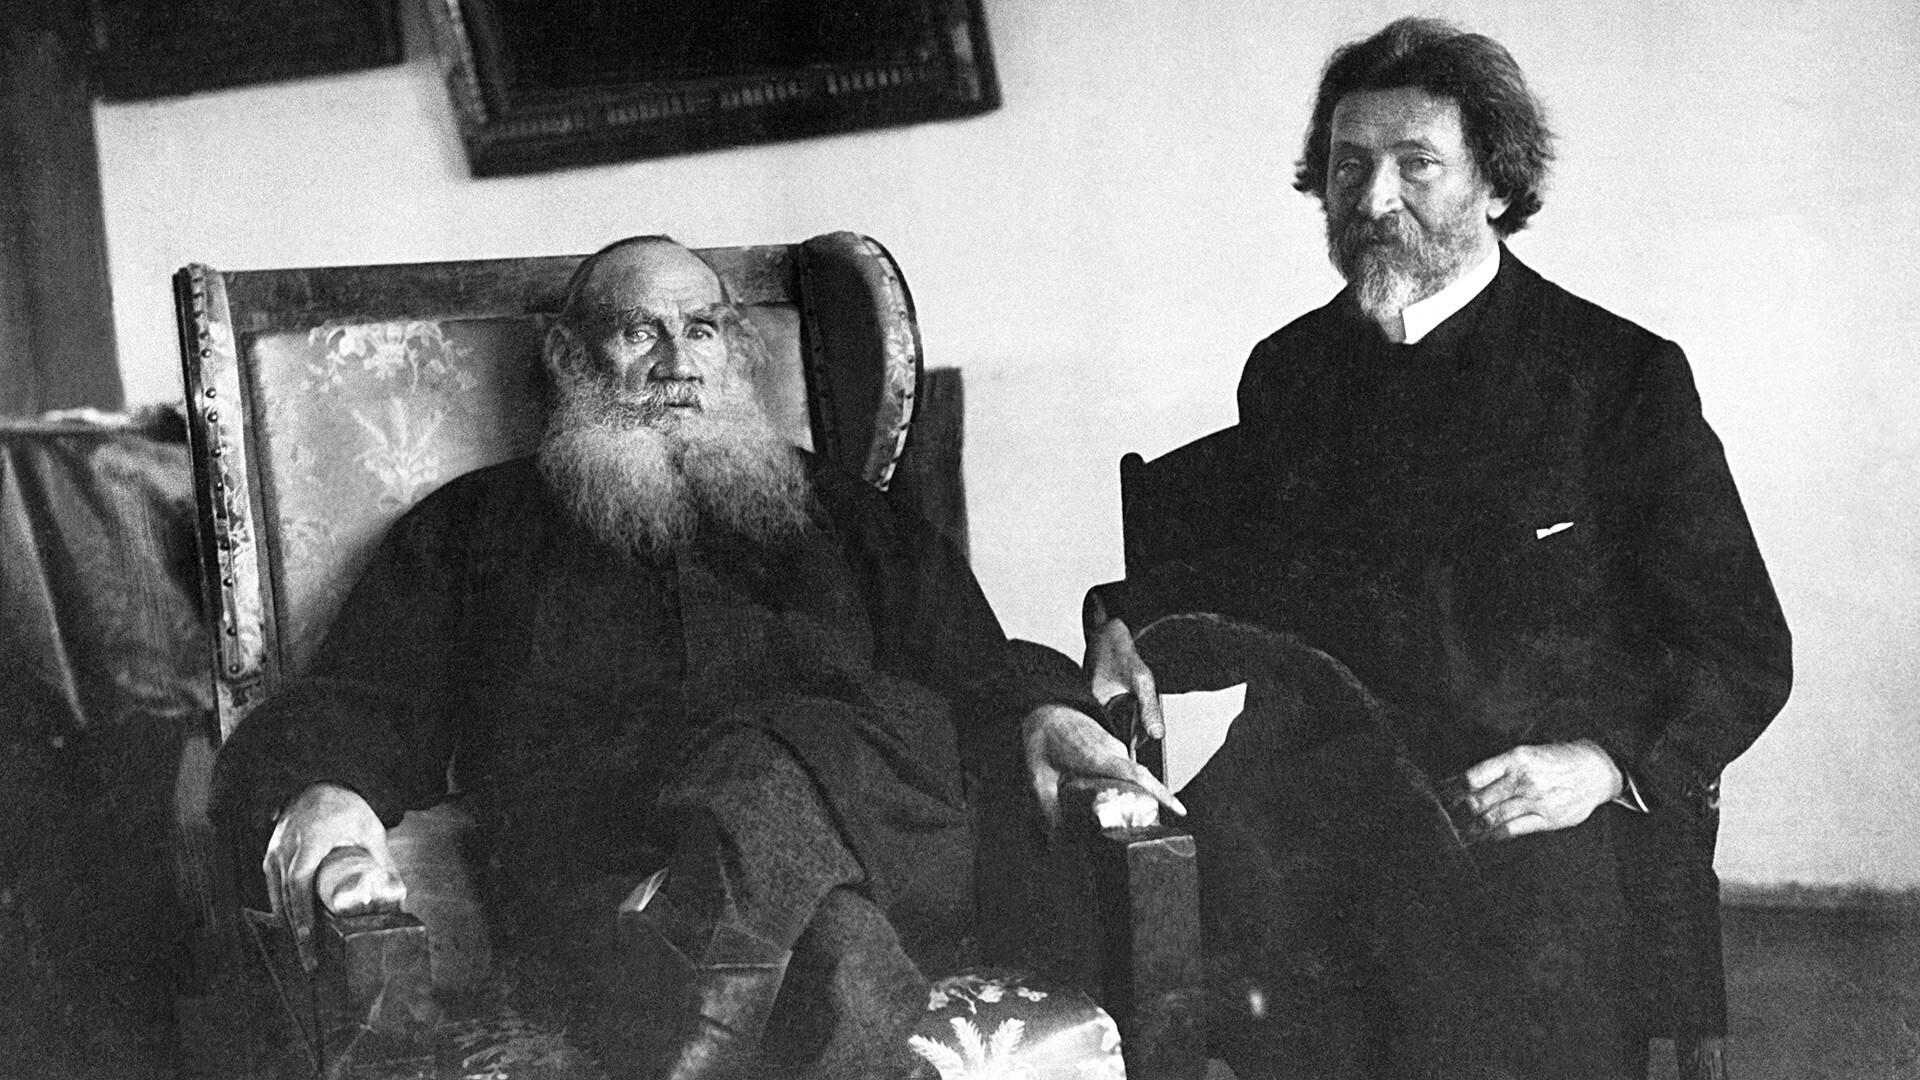 Ruski pisatelj Lev Tolstoj (levo) in slikar Ilja Repin na Tolstojevi posesti Jasna Poljana 